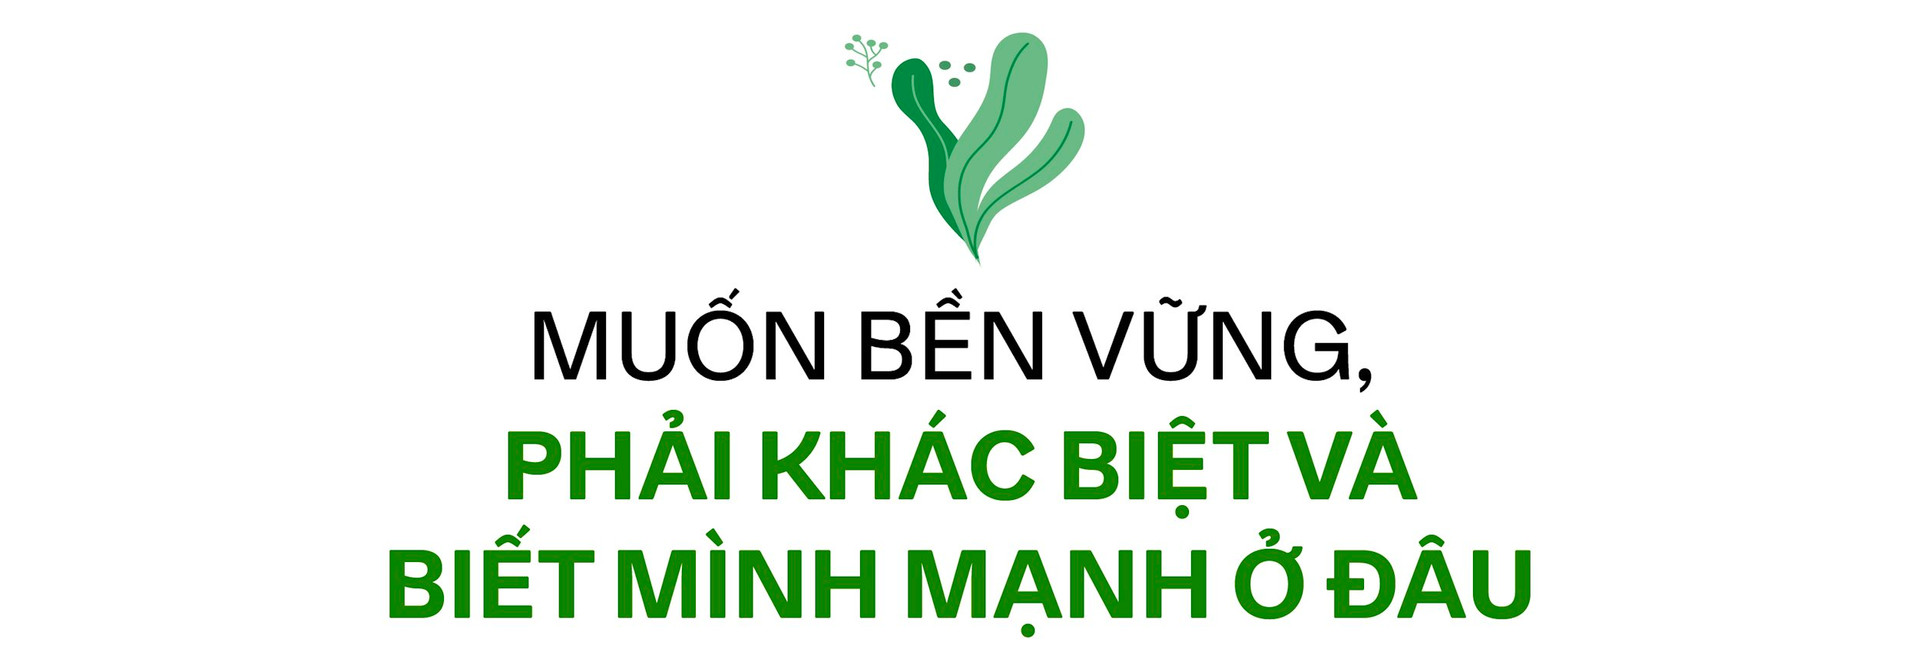 Từ kho nhỏ bán cây đến thương hiệu cà phê xanh có tiếng tại Hà Nội, CEO 8x kể chuyện chinh phục phân khúc cao cấp ở “ngách” mới, “tiền không phải vấn đề” với khách hàng - Ảnh 14.